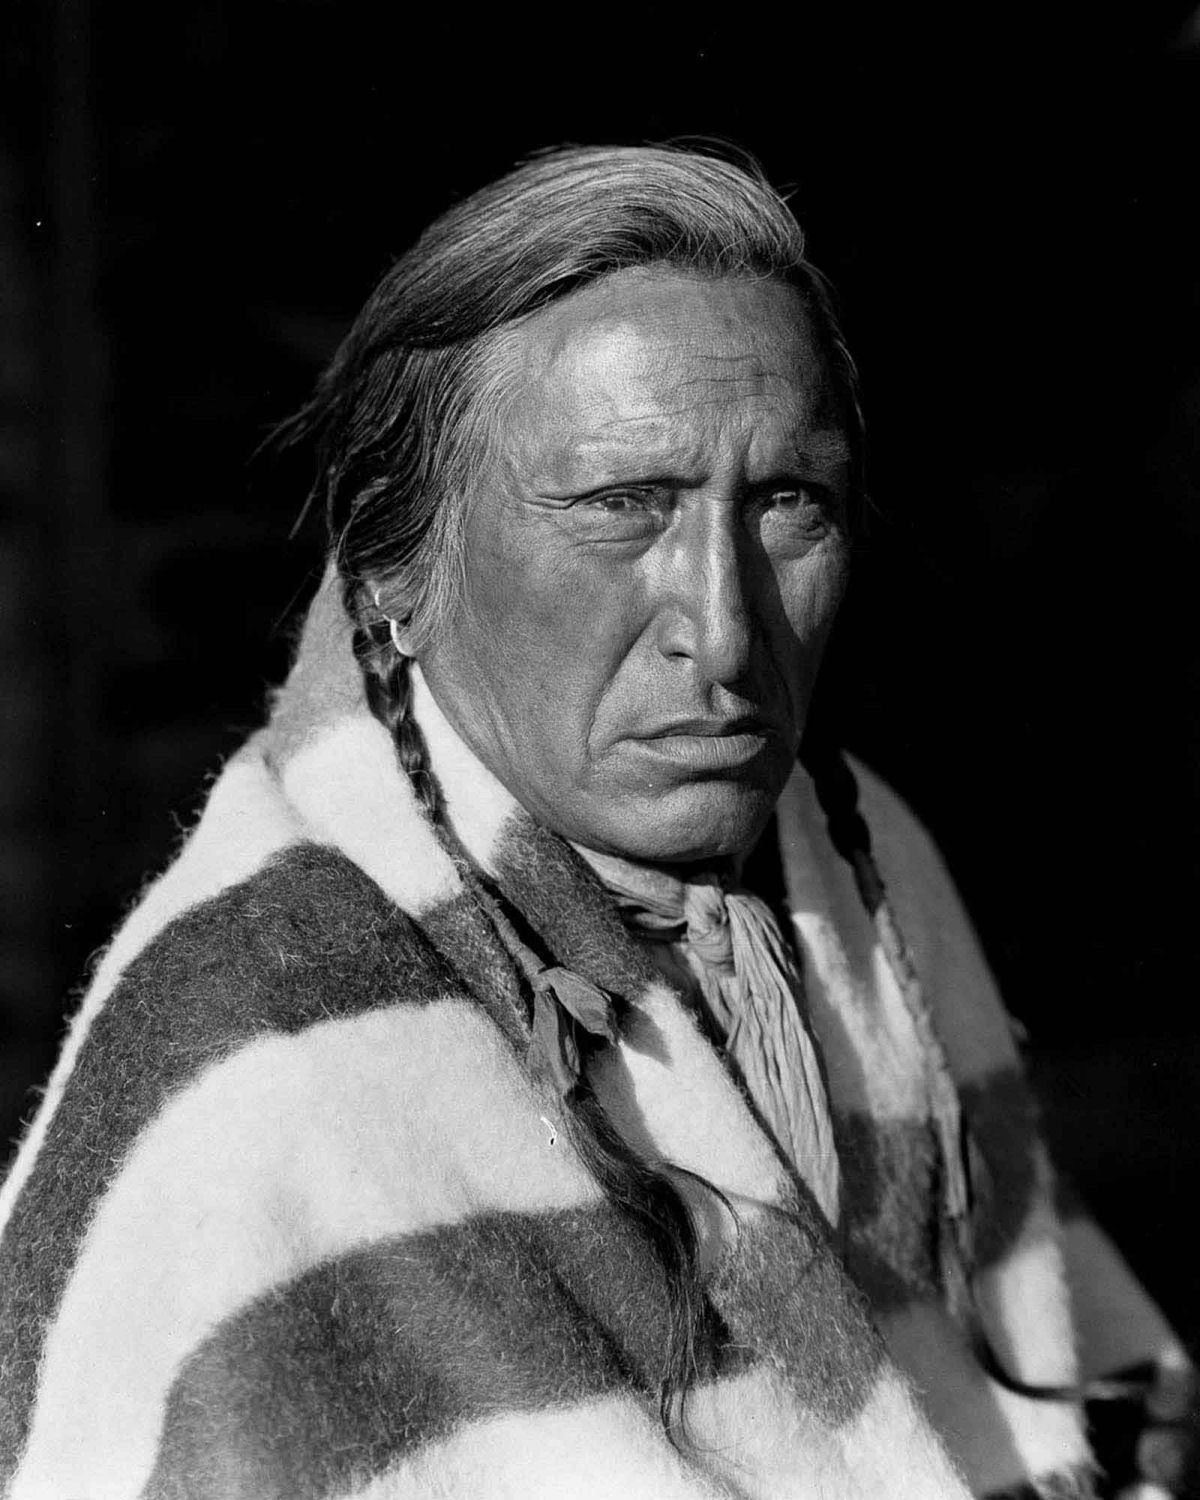 Os nativos das Primeiras Nações do Canadá em fotos históricas raras 01